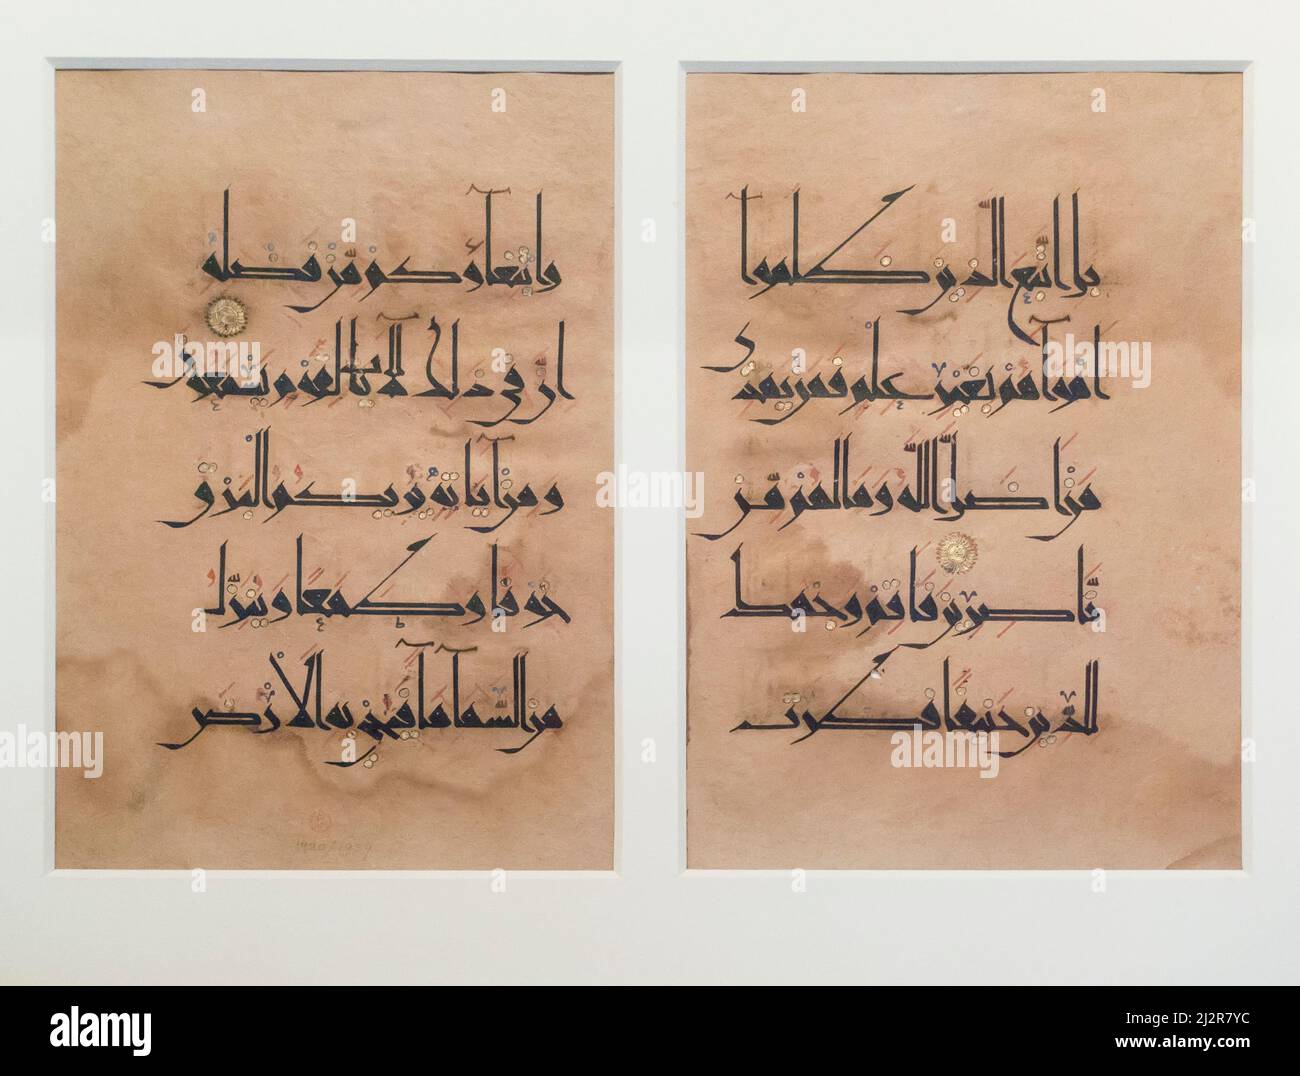 Deux feuilles du Qur'an 950 -1250 exposées au Victoria and Albert Museum, Londres, Angleterre, Royaume-Uni Banque D'Images